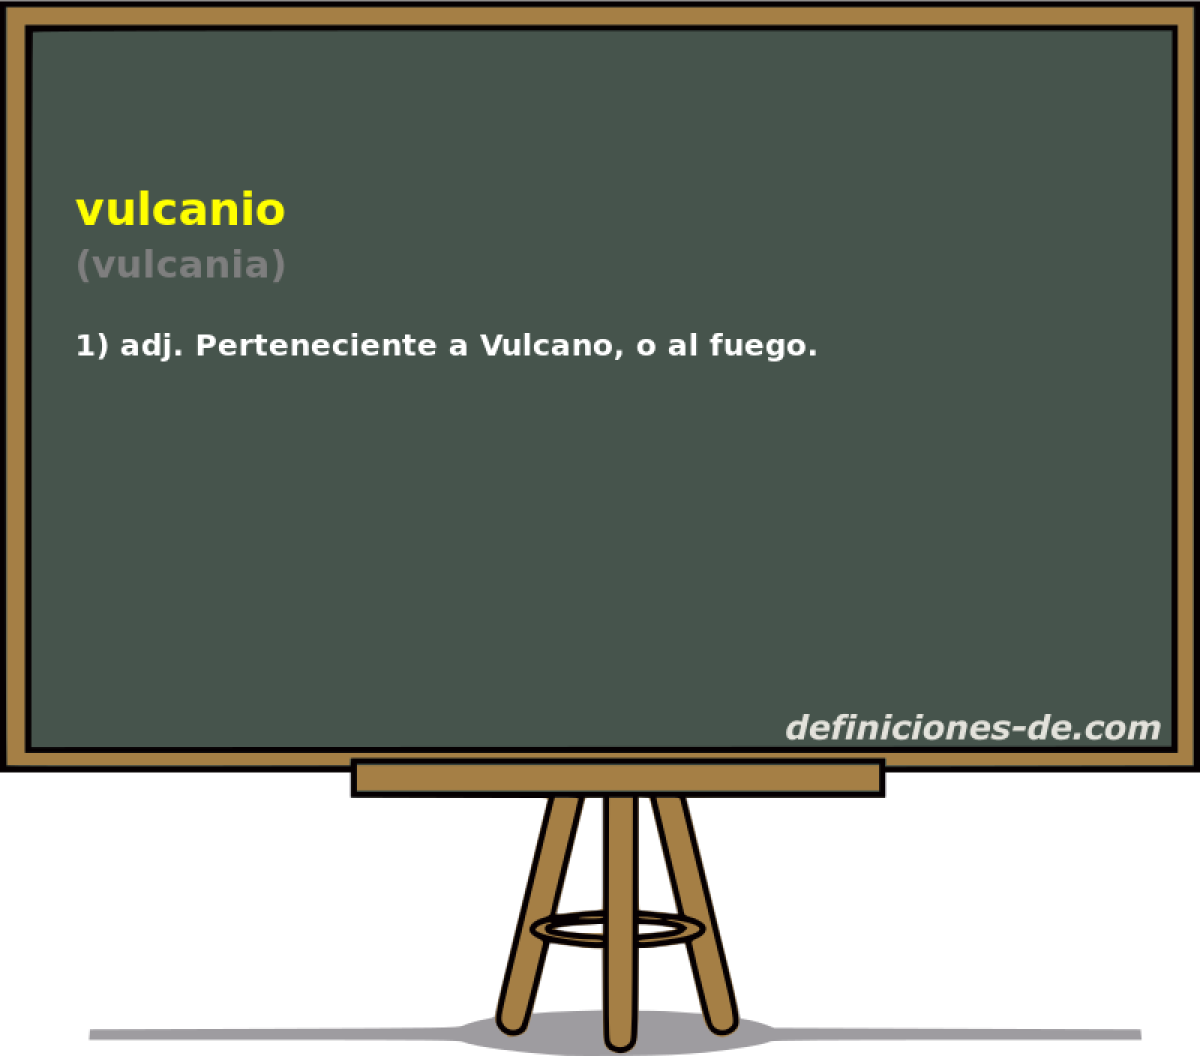 vulcanio (vulcania)